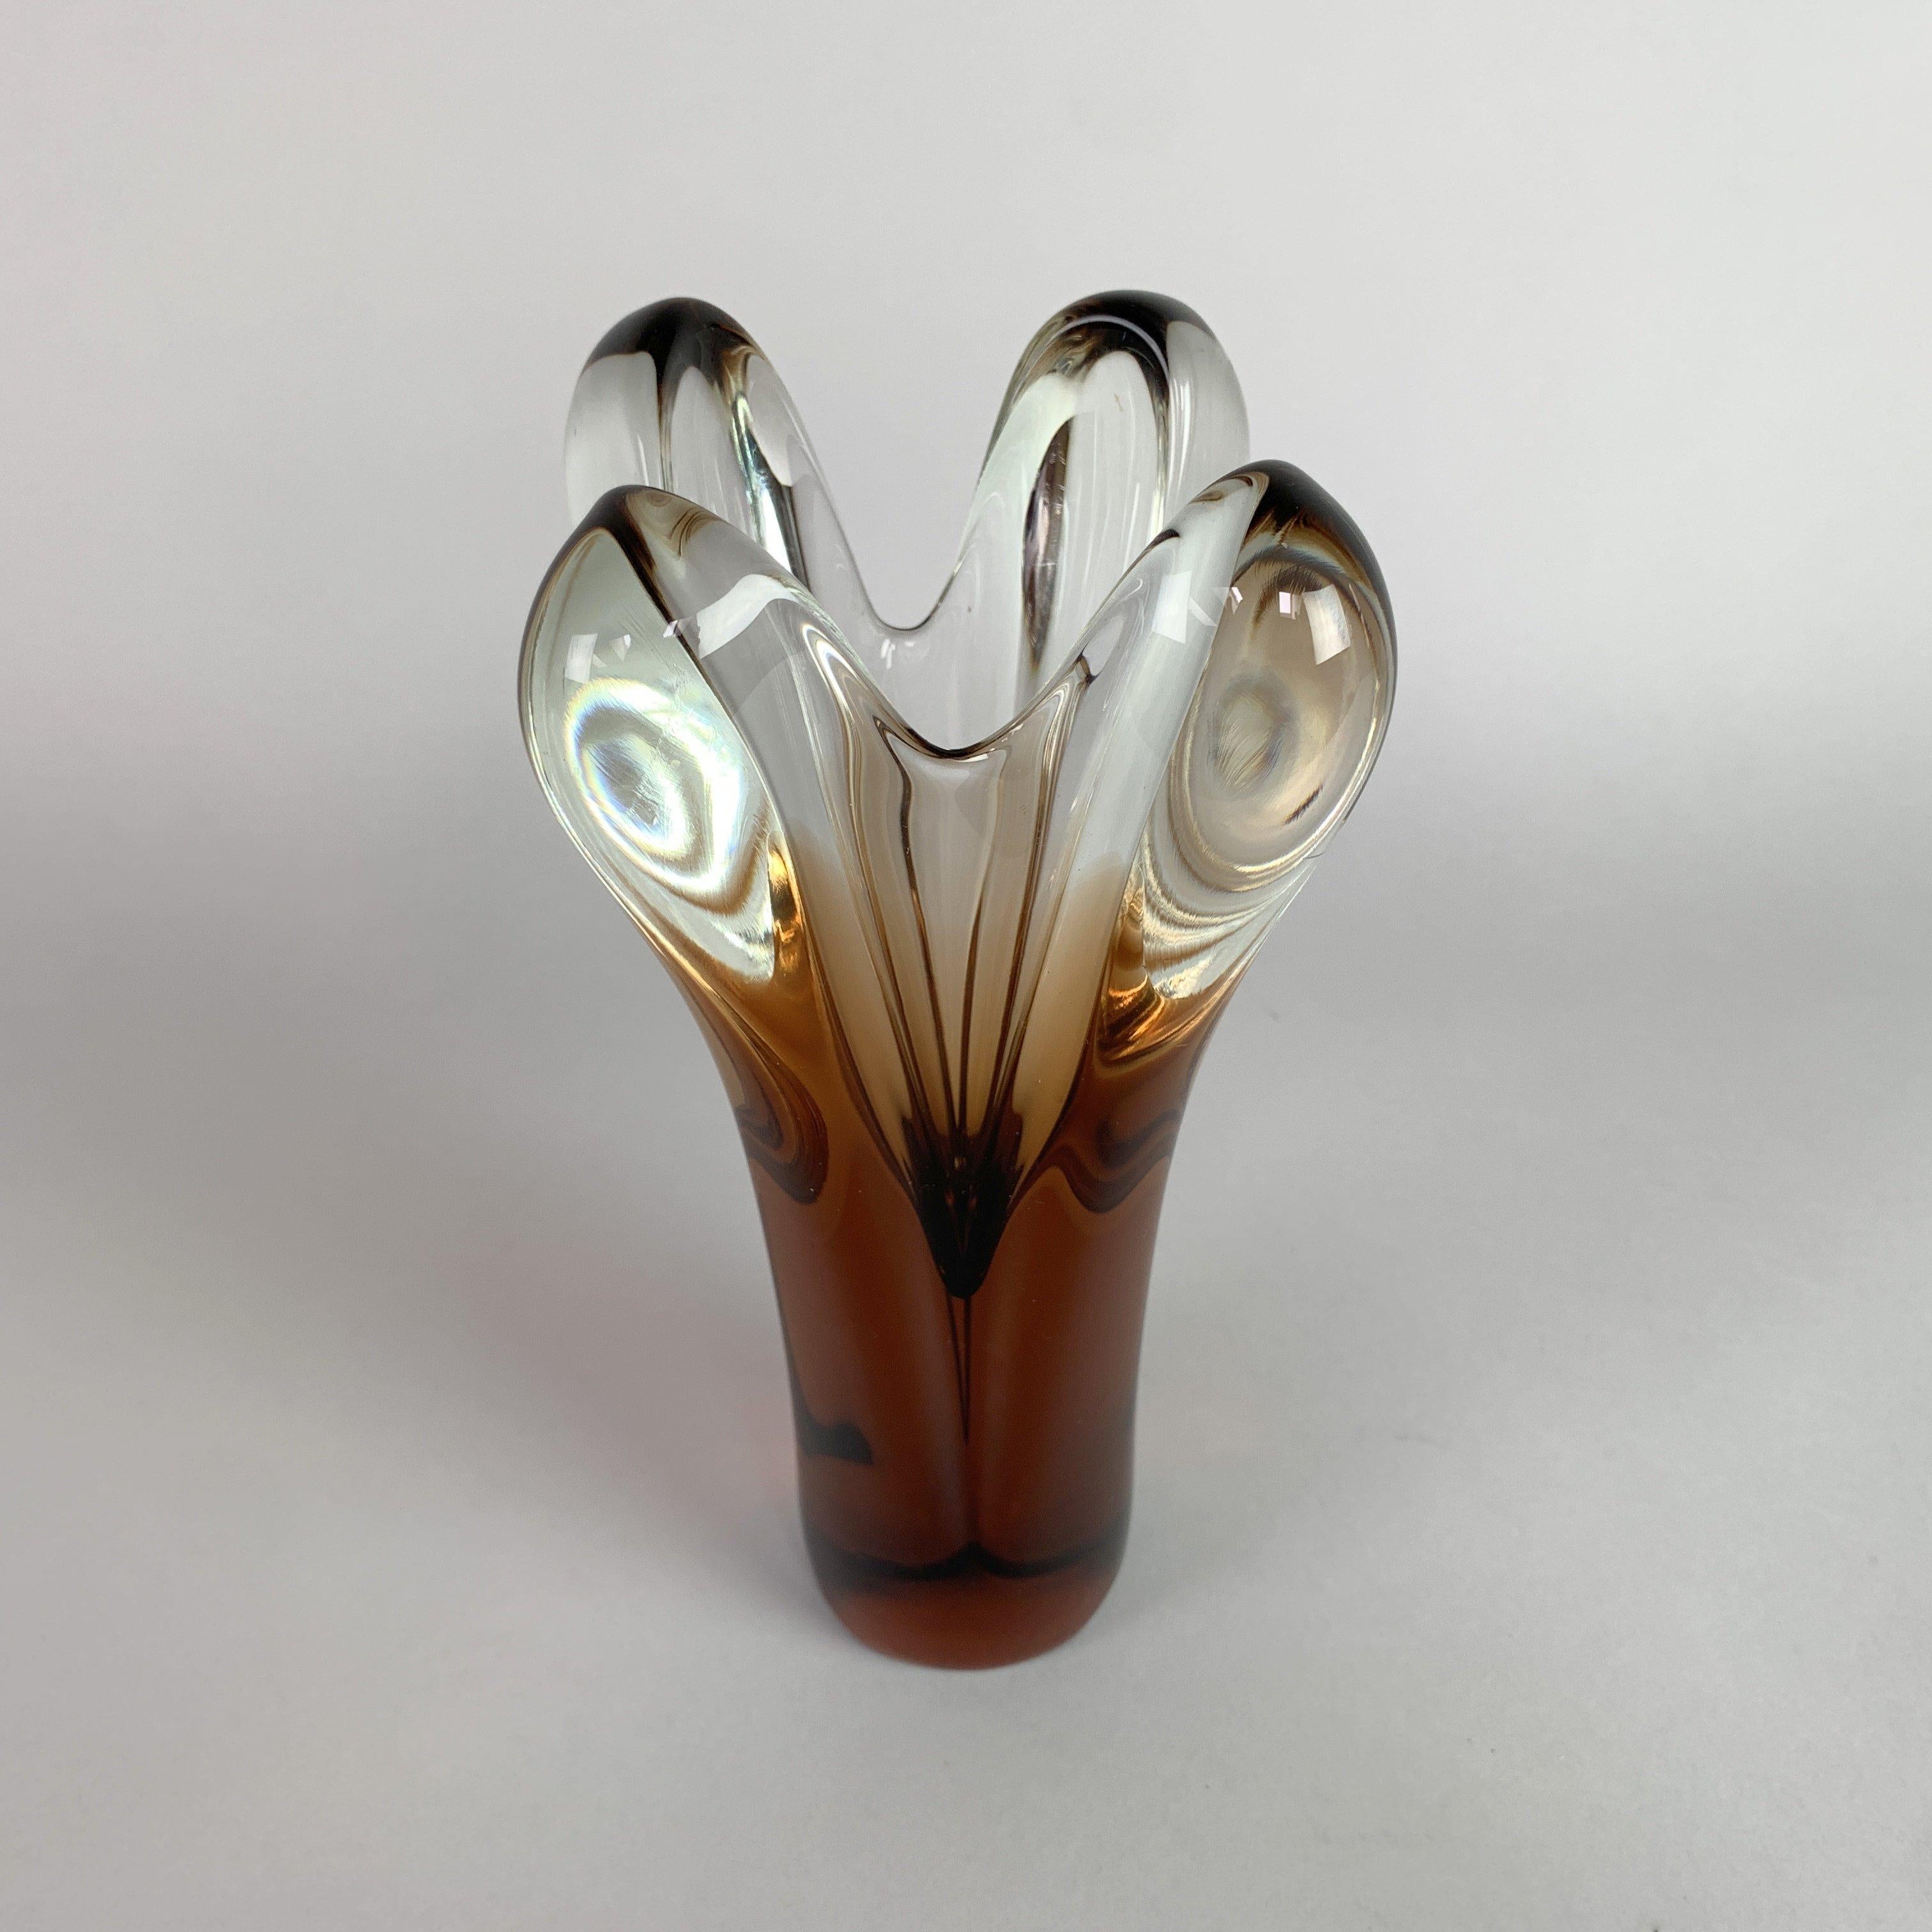 Czech Art Glass Vase by Jan Beranek for Skrdlovice Glasswork, 1960s For Sale